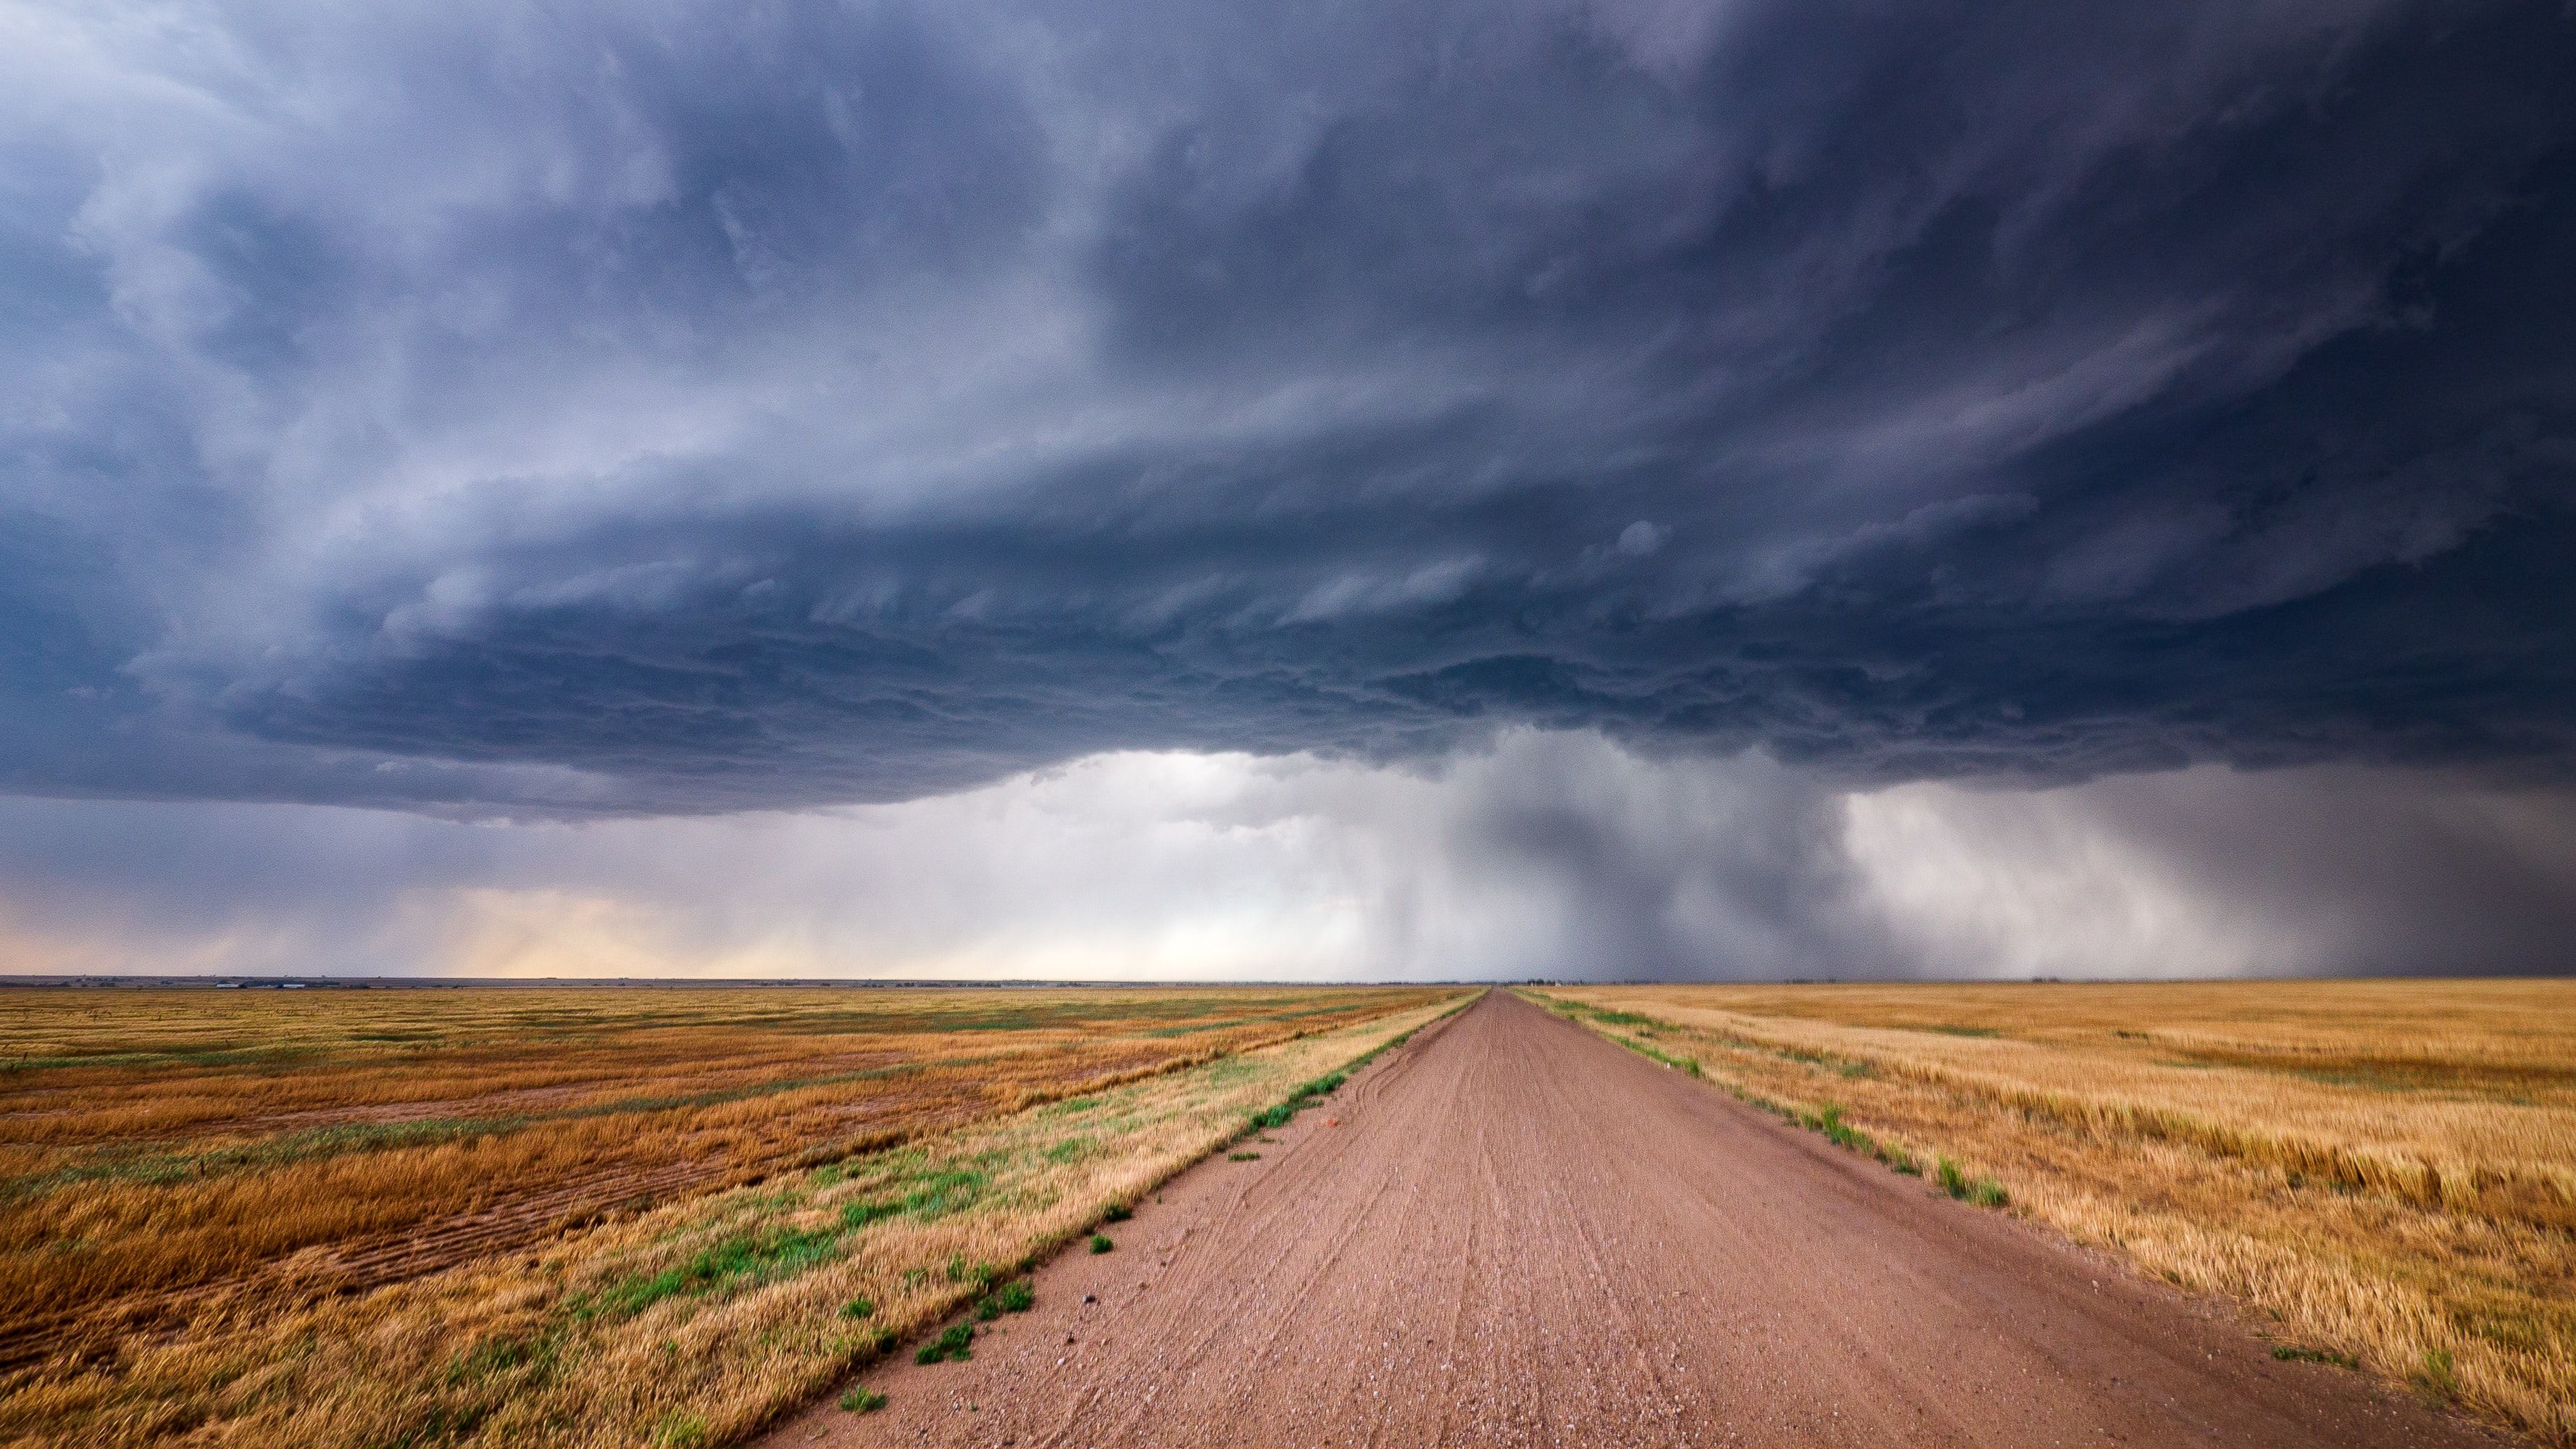 A gathering storm over Kansas